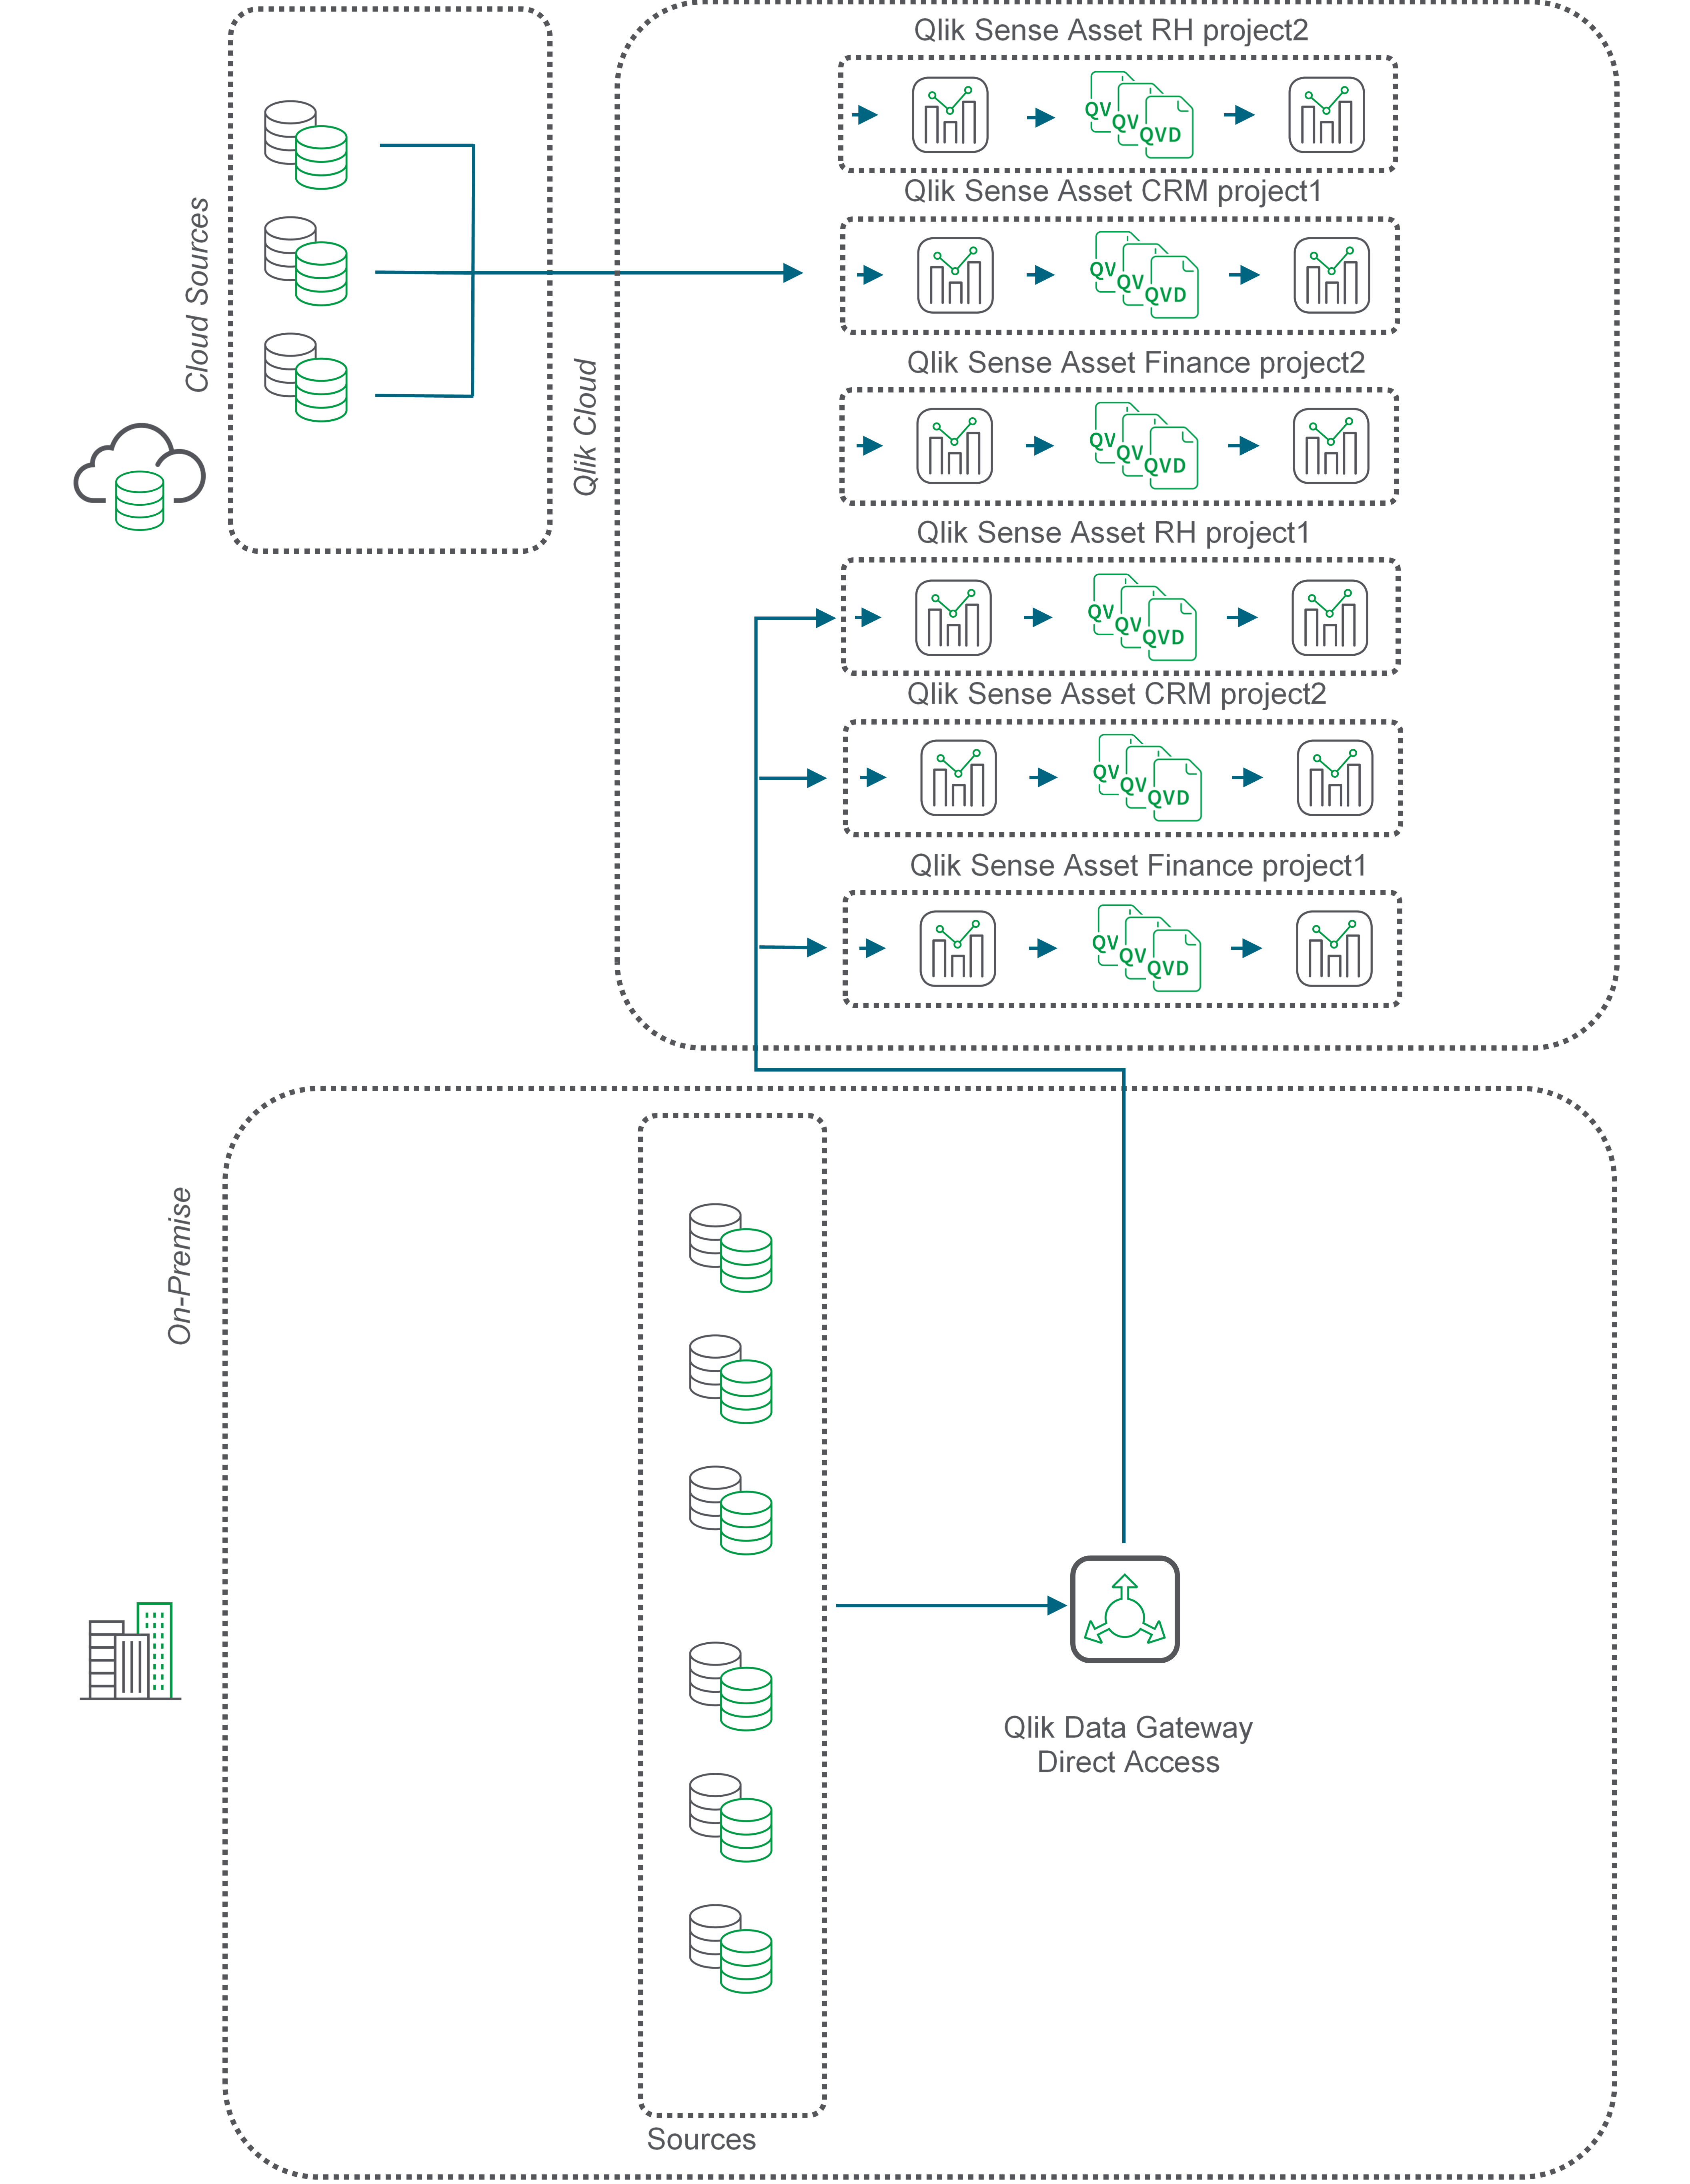 Stroomdiagram dat de QVD-beweging beschrijft die de Qlik gegevensgateway voor directe toegang gebruikt.